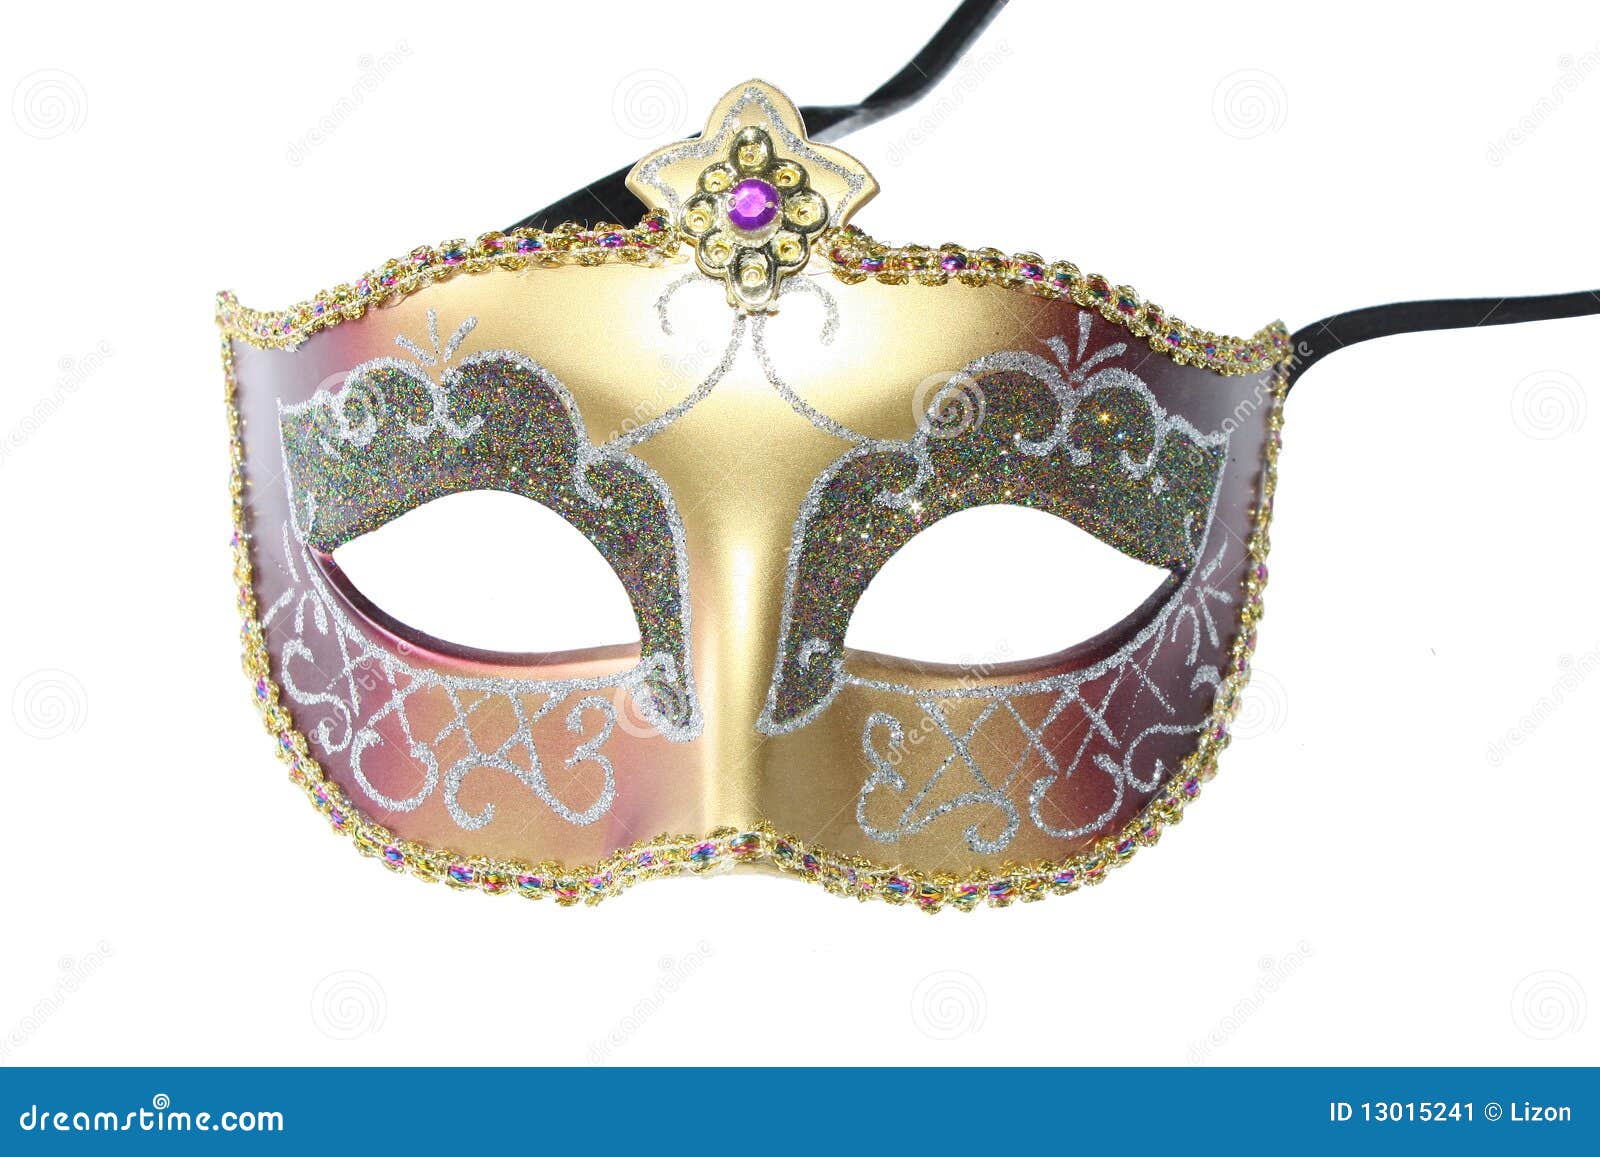 carnival mask 